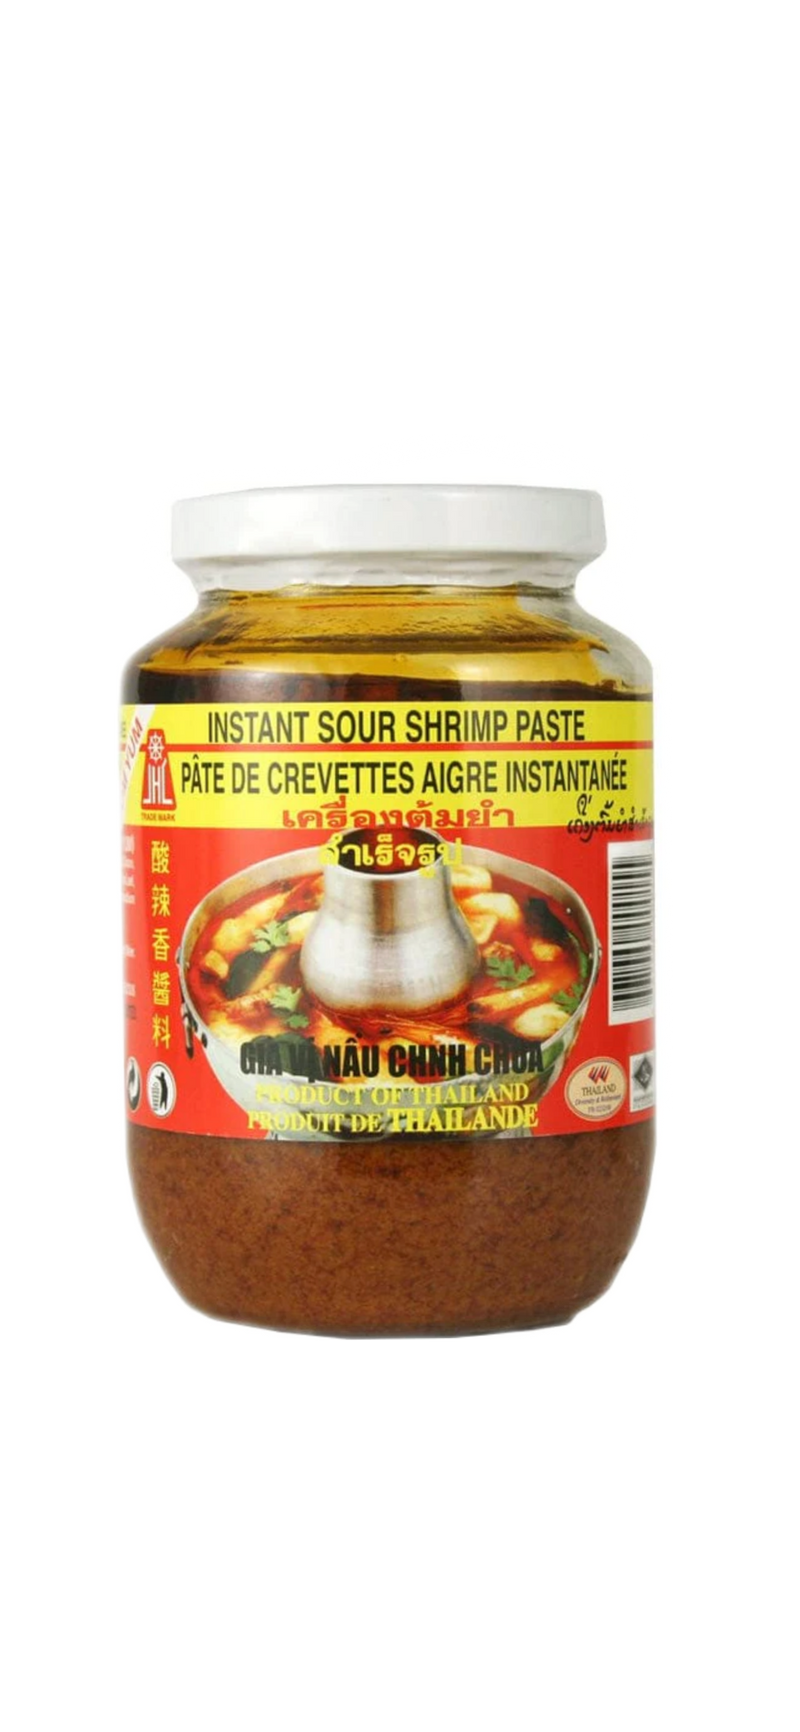 JHC Instant Sour Shrimp Paste (Tom Yum)